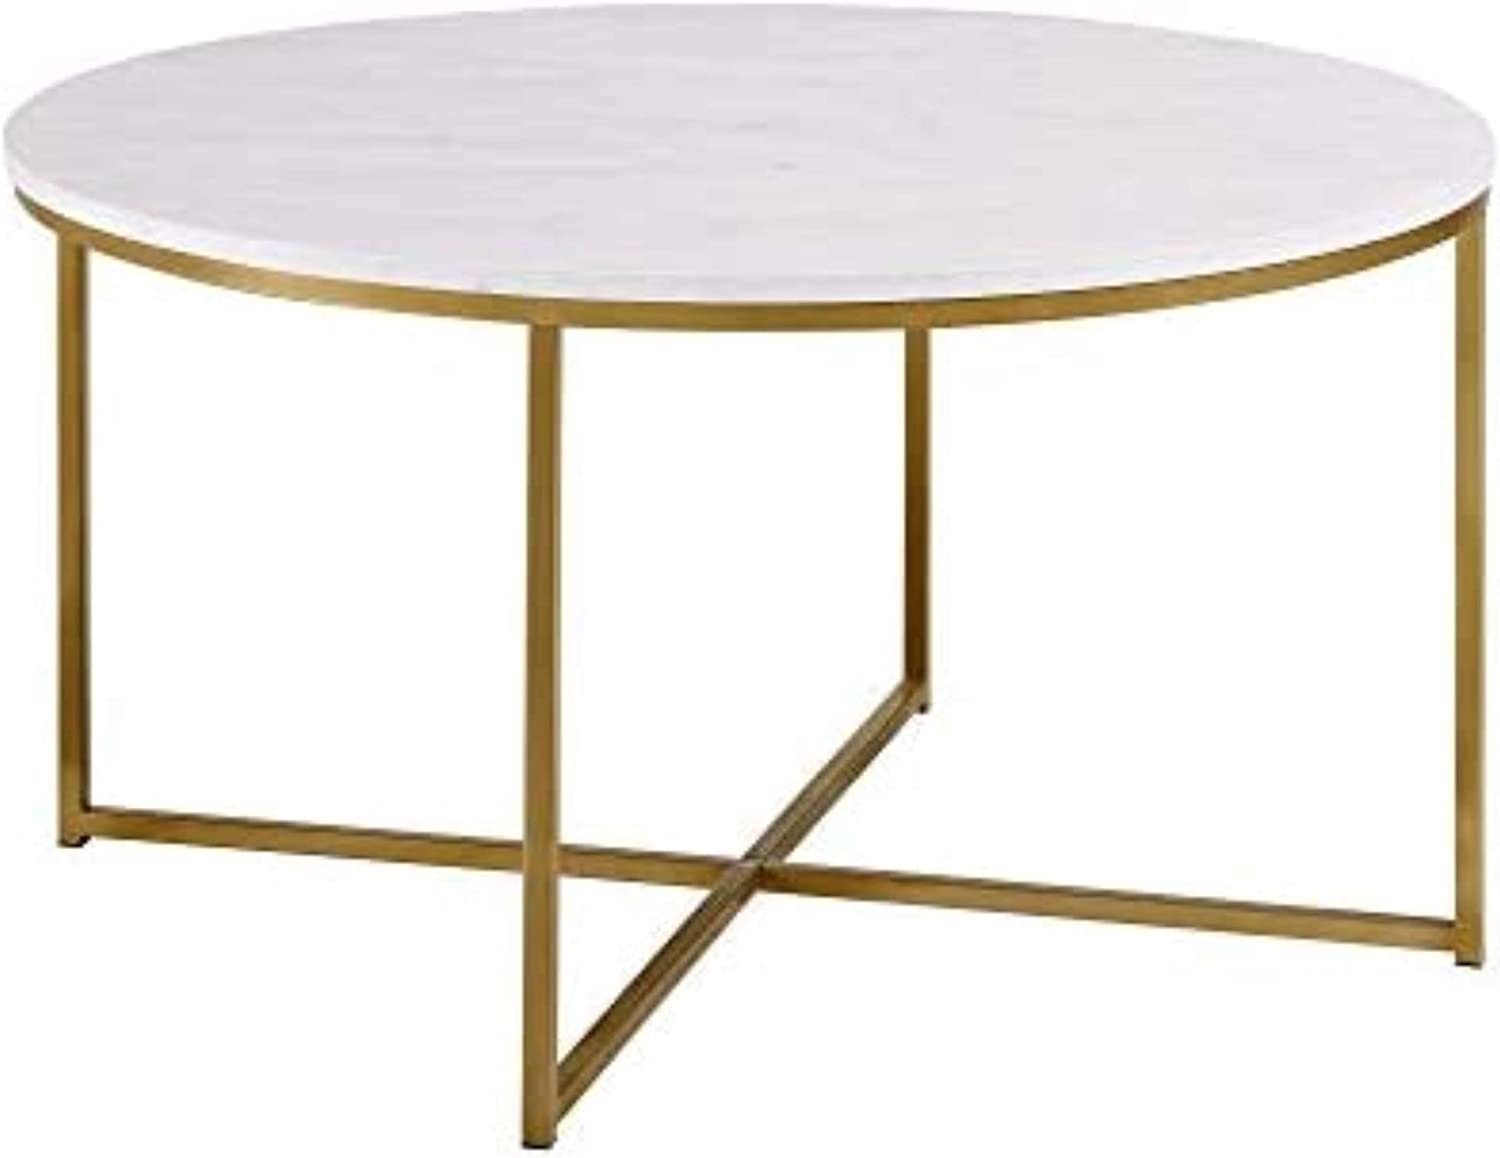 Round White Top / Gold Leg Coffee Table